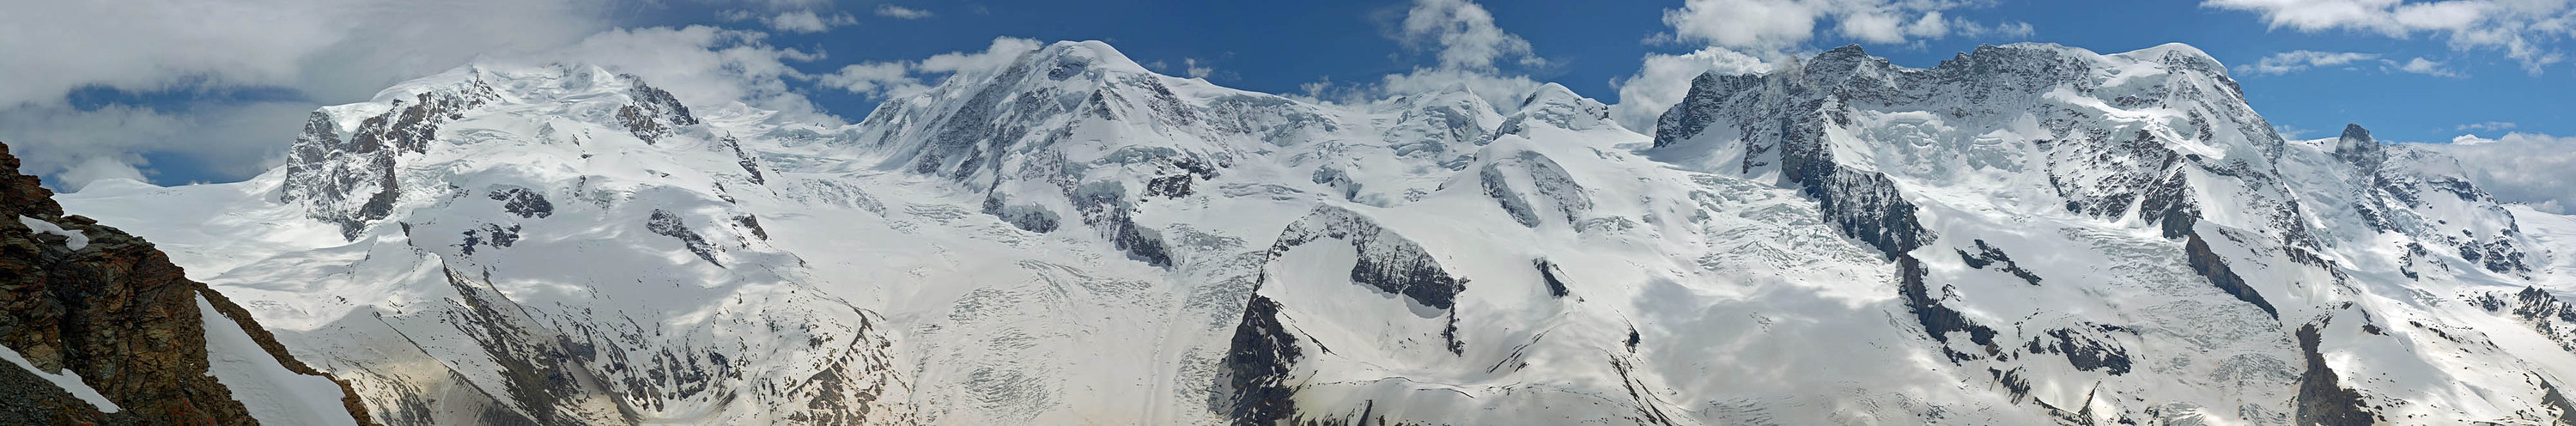 Vom Gornergletscher bis zum Kleinen Matterhorn